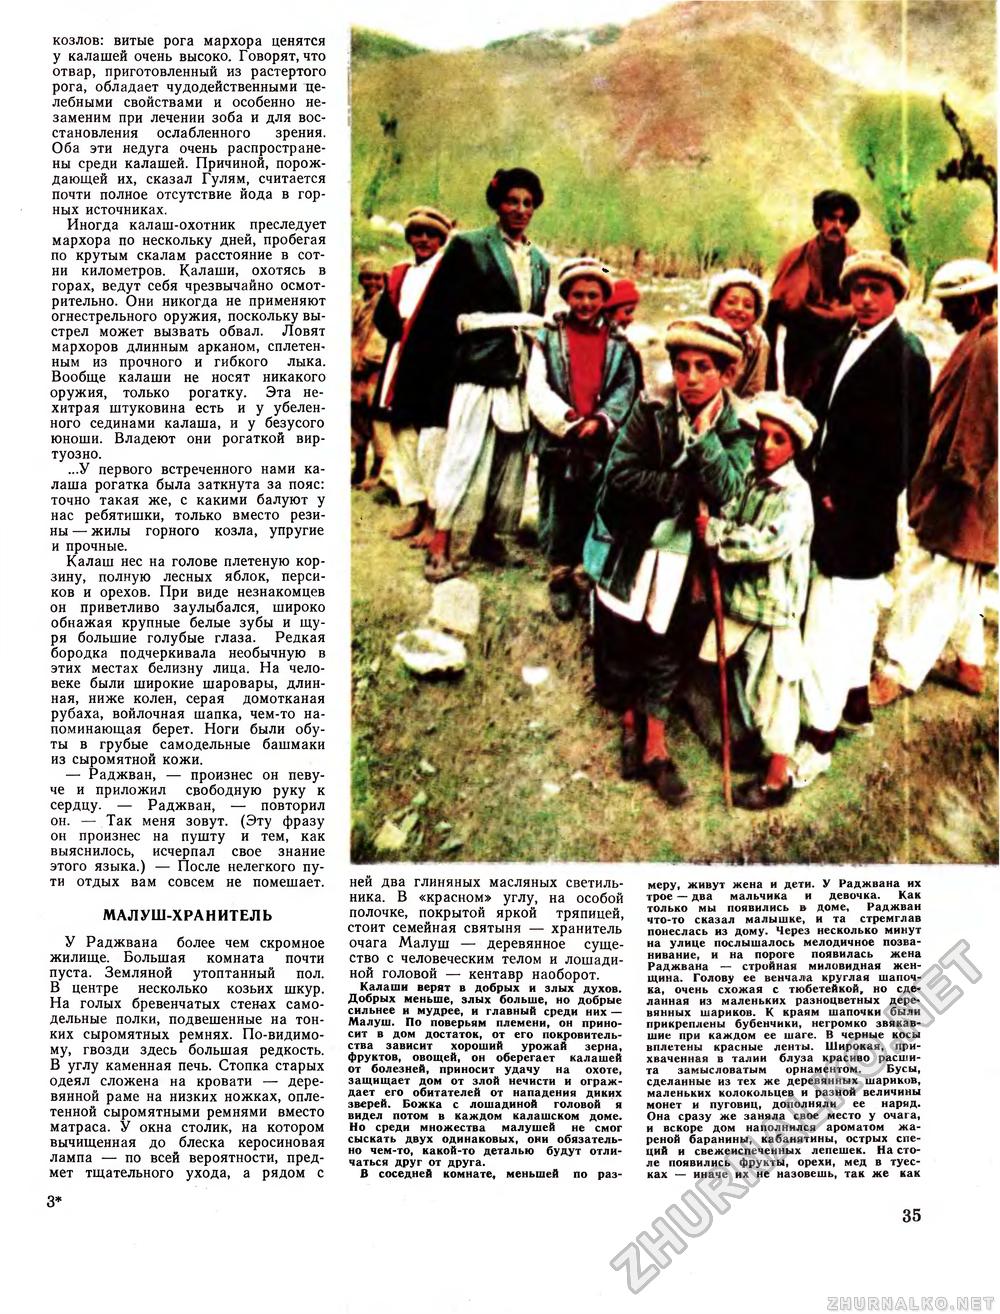 Вокруг света 1979-05, страница 37